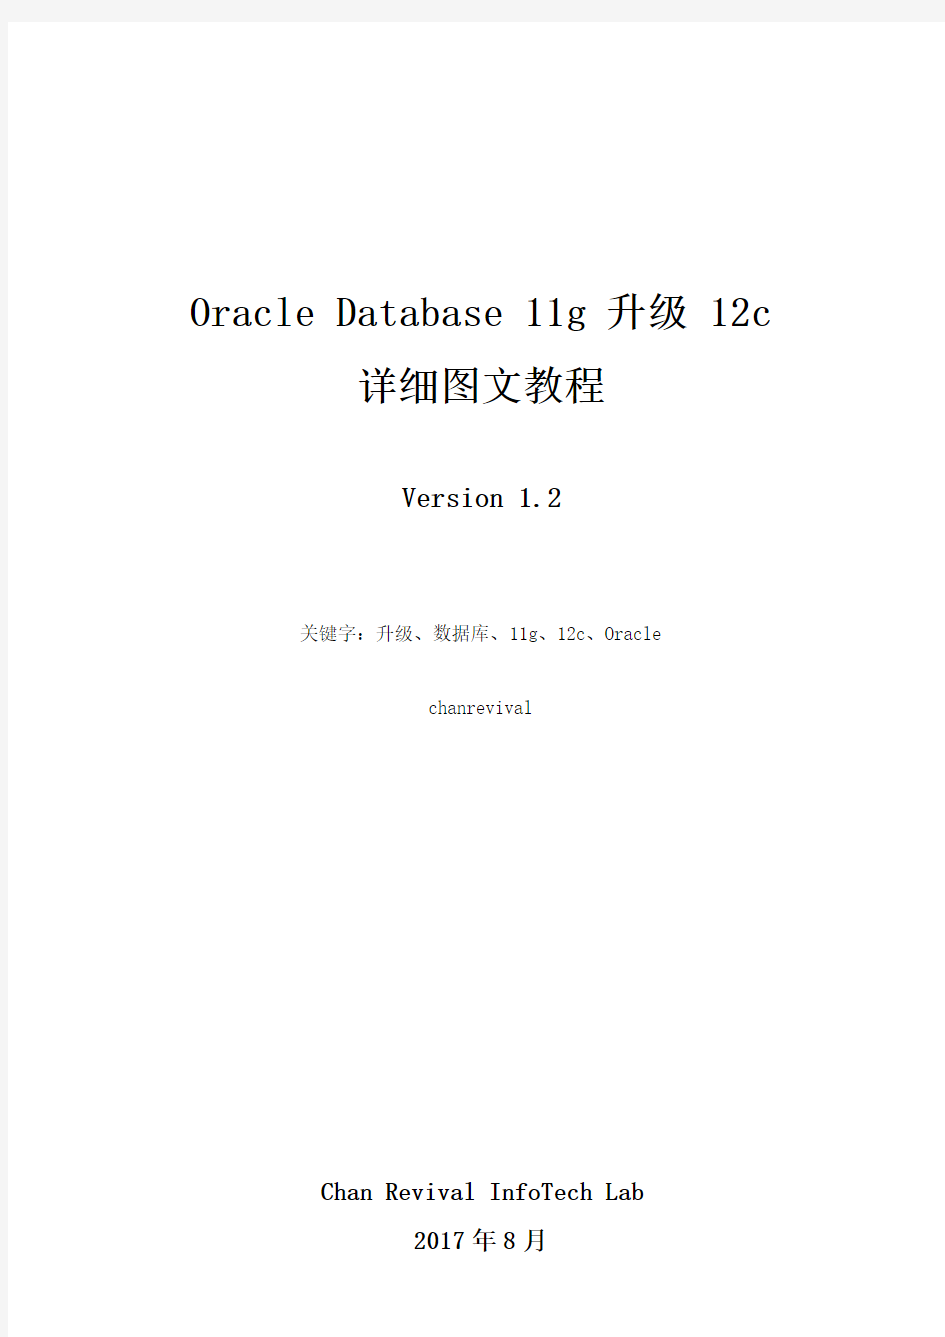 Oracle Database 11g 升级 12c 详细图文教程_V1.2